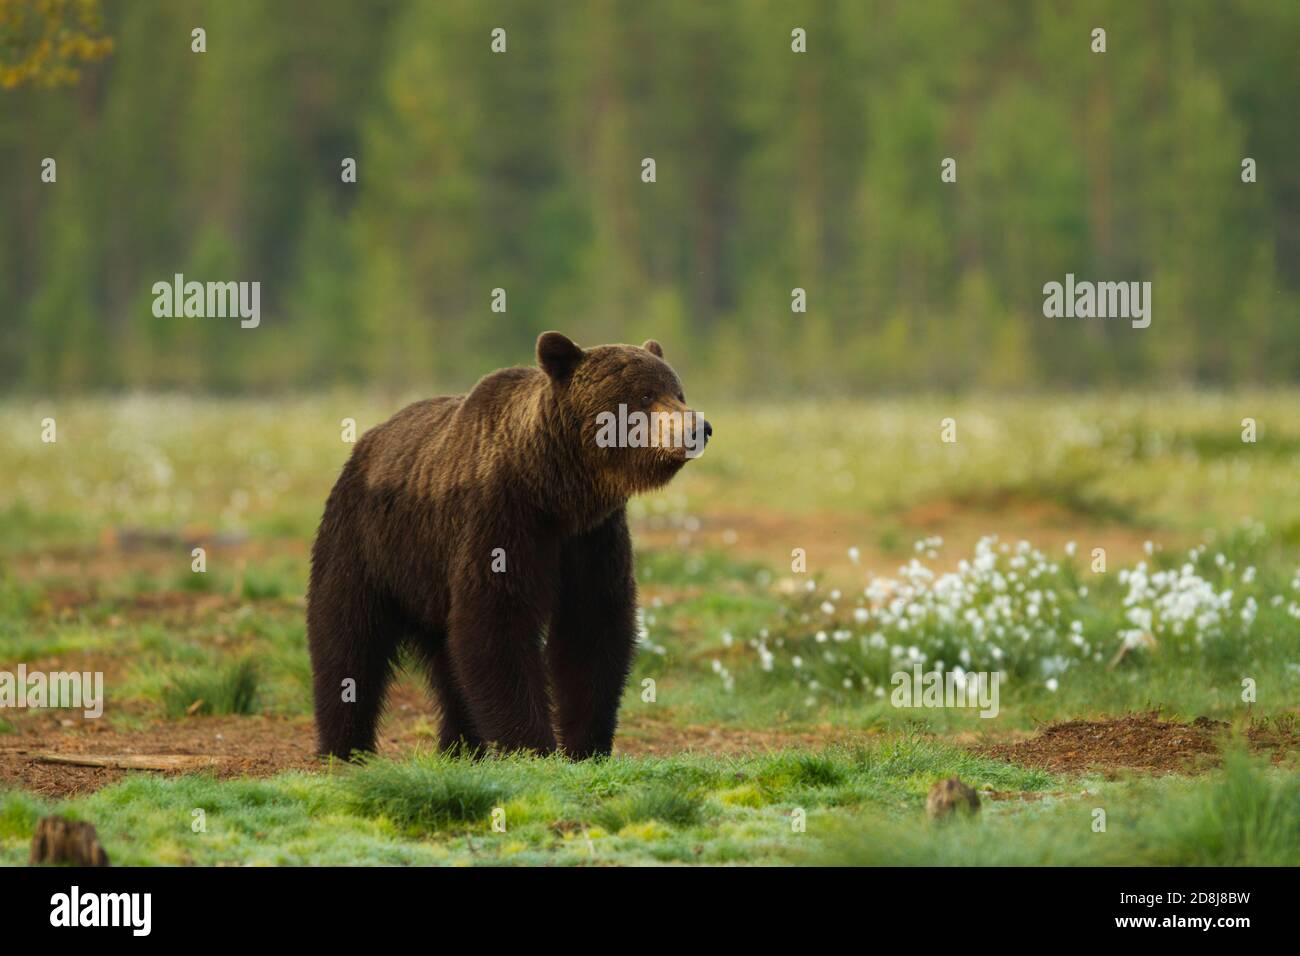 Wilder europäischer Braunbär (Ursus arctos), der in der Nähe von Wald steht. Viiksimo Finnland. 25.06.2013. Stockfoto